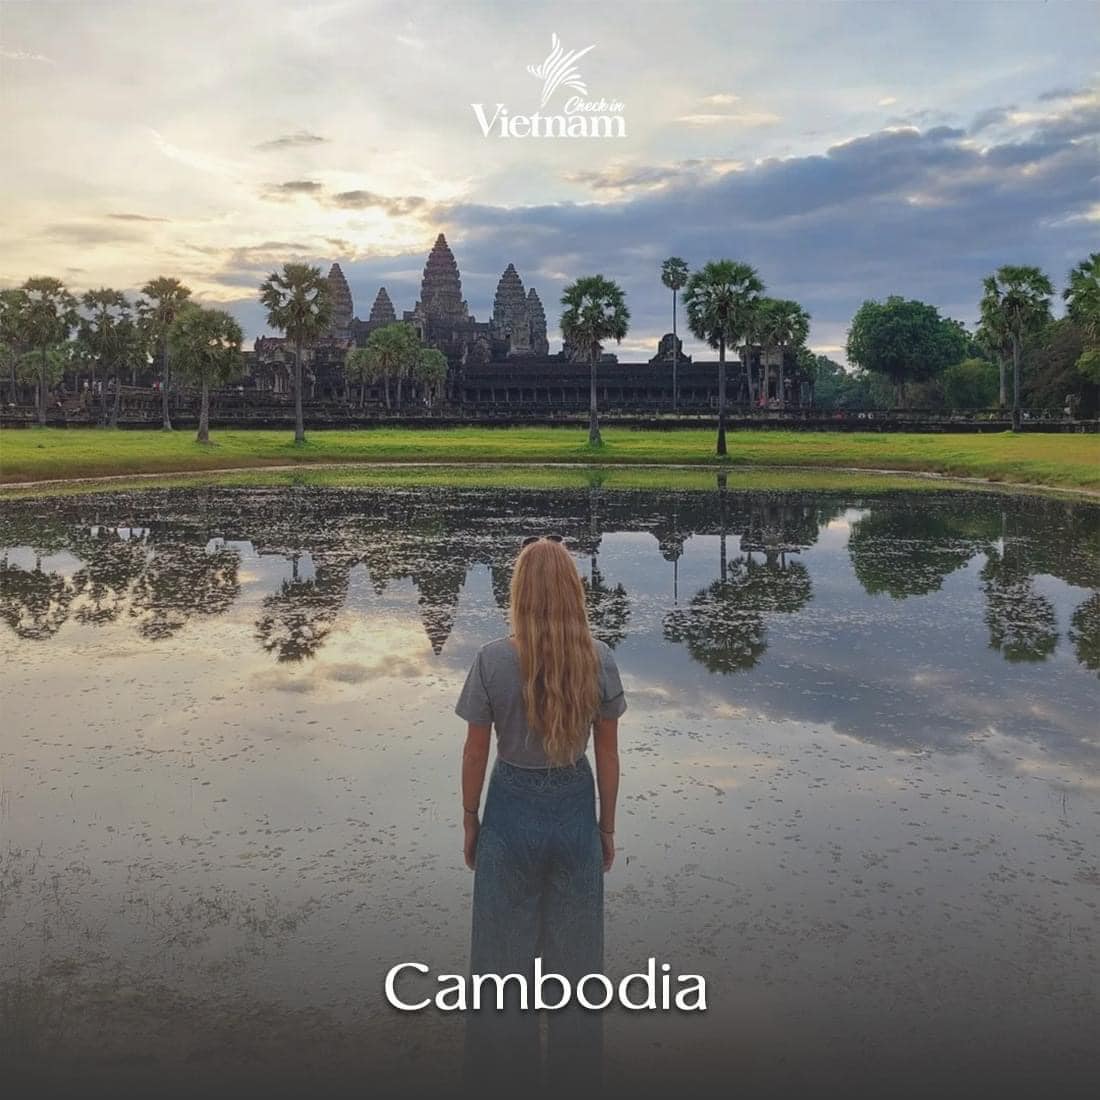 9. Cambodia